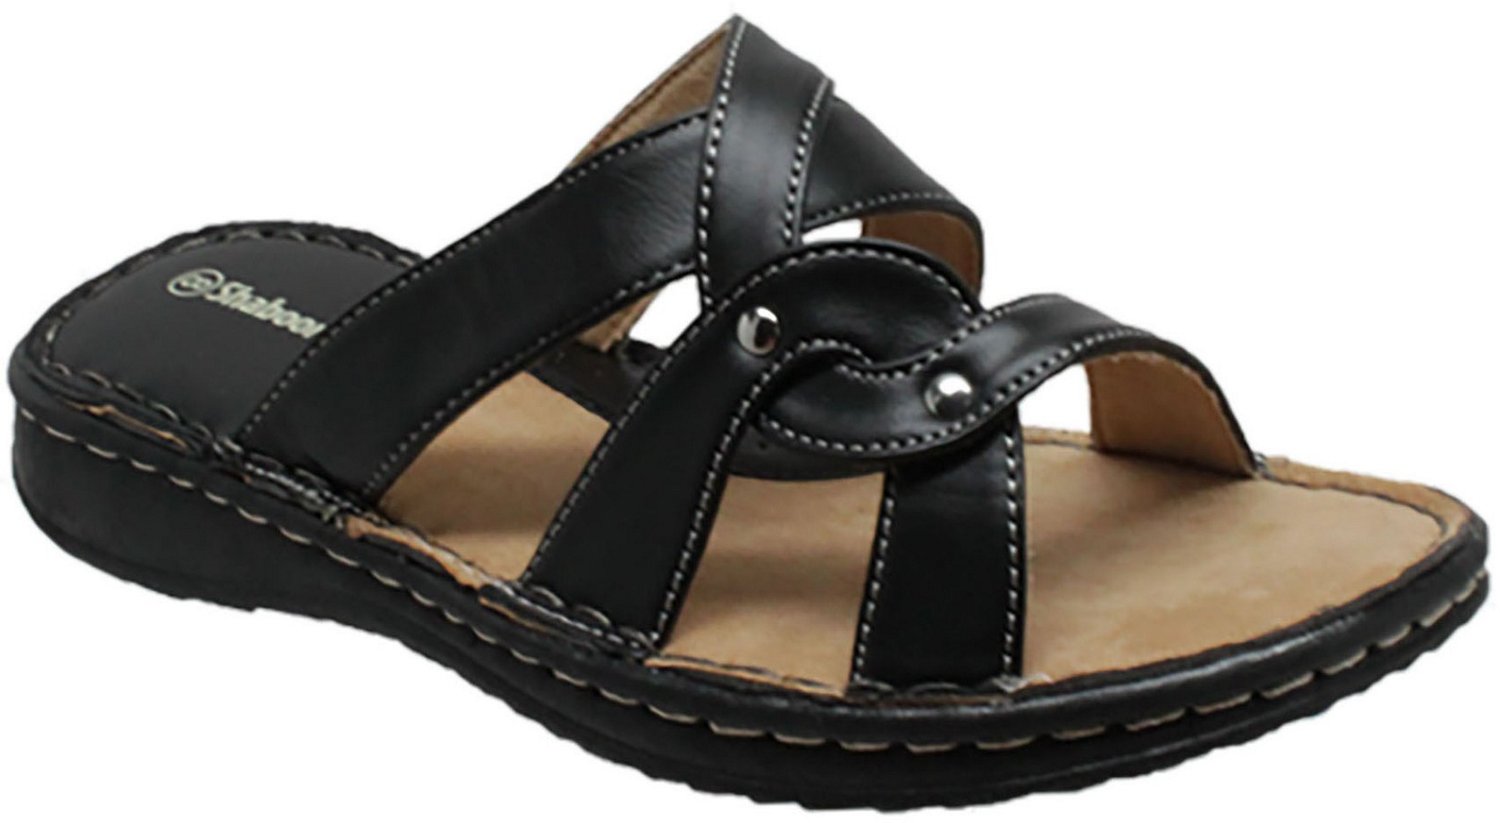 Shaboom Women's Comfort Sandals                                                                                                  - view number 2